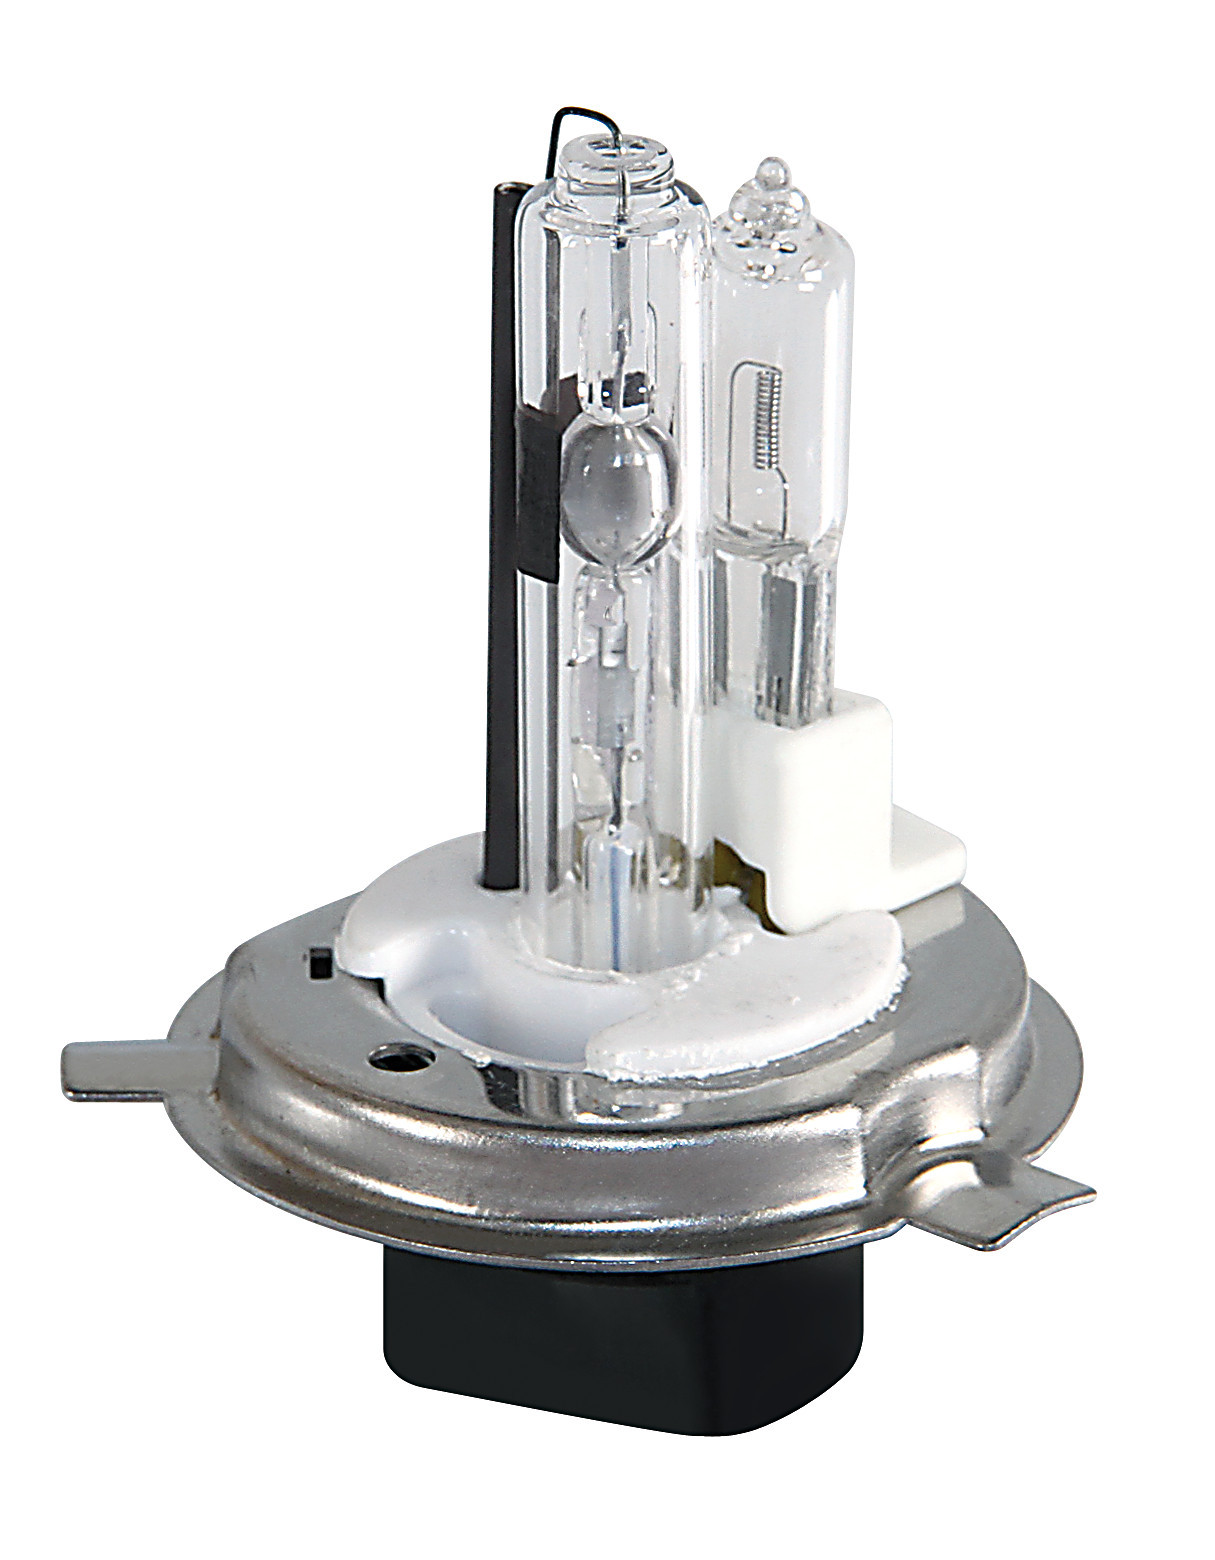 Bec Xenon H.I.D. Lampa H4 dublu 12V - 8000K - 1buc rez. thumb